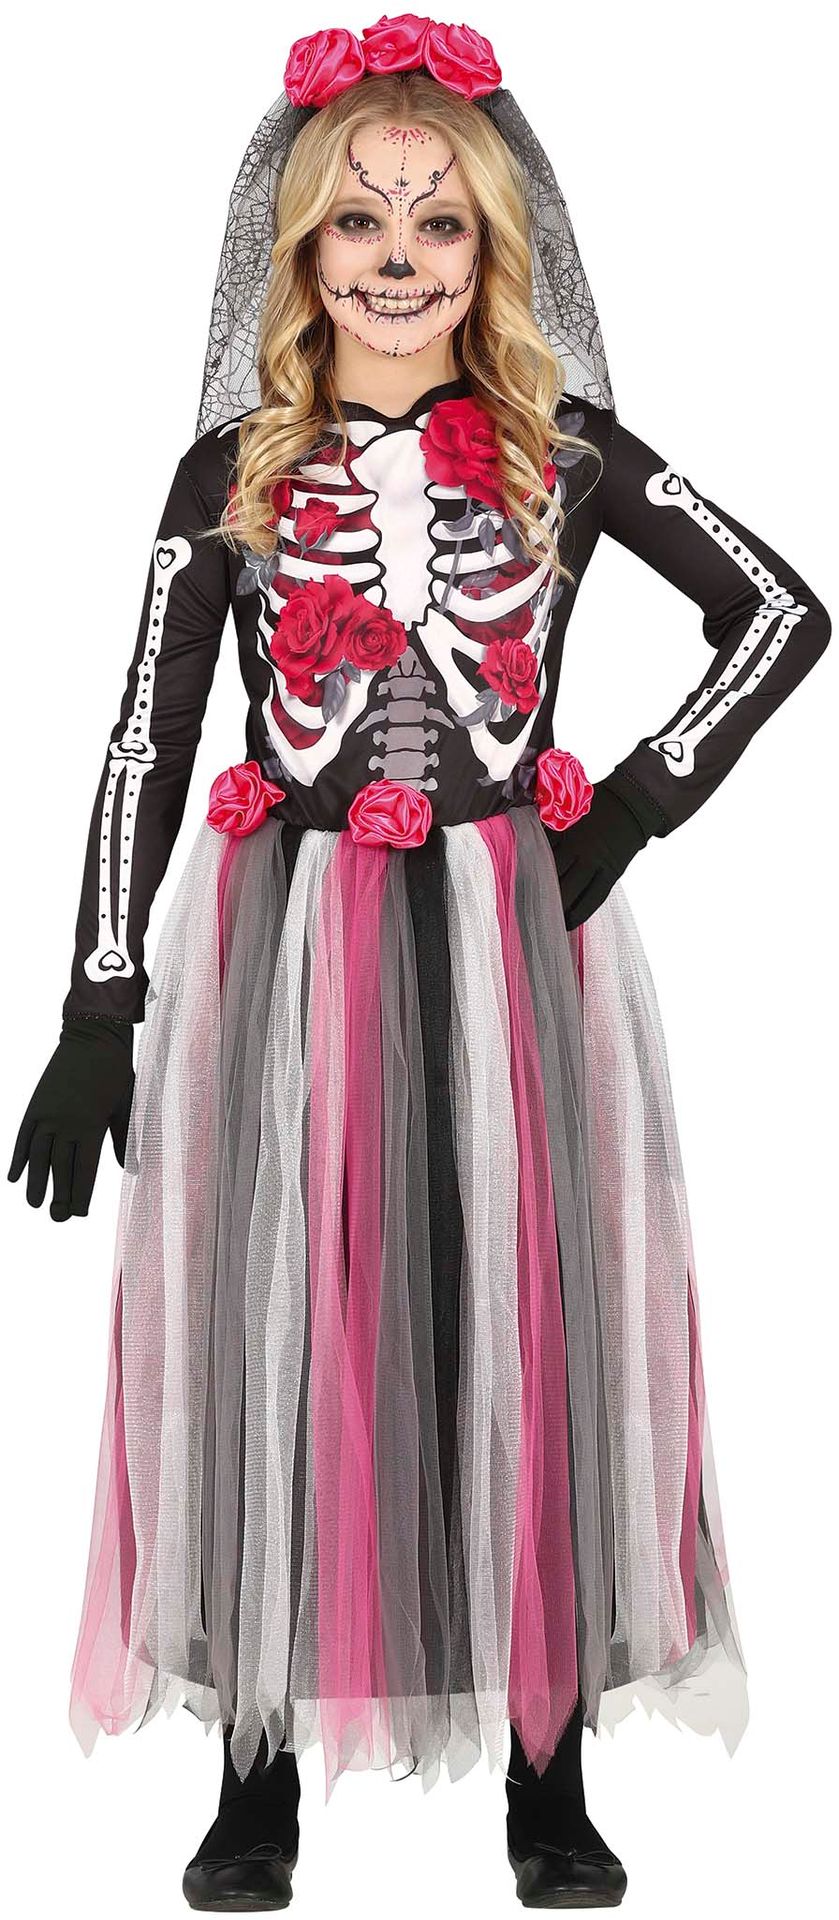 Skelet outfit meisje met rozen